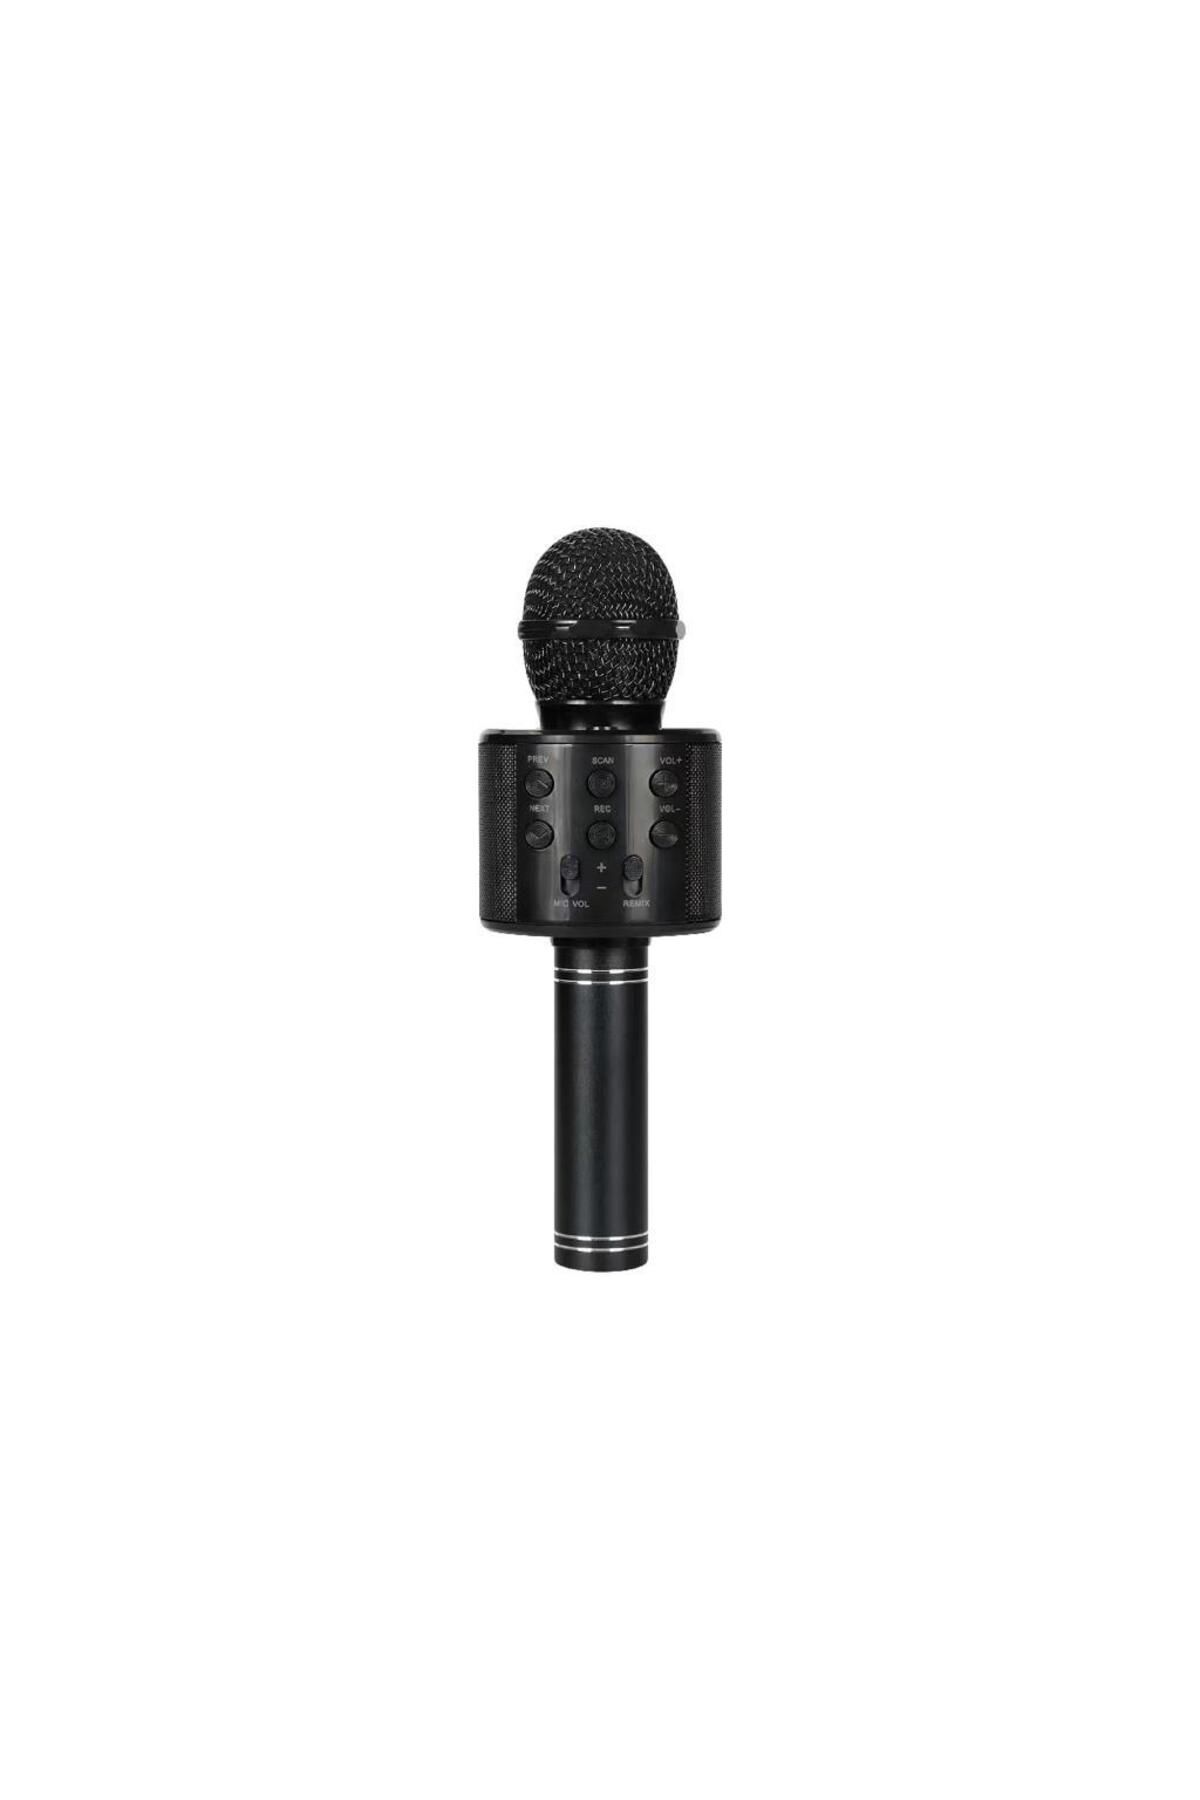 Sunix Bluetooth Kareoke Mikrofon Siyah Mcf-10